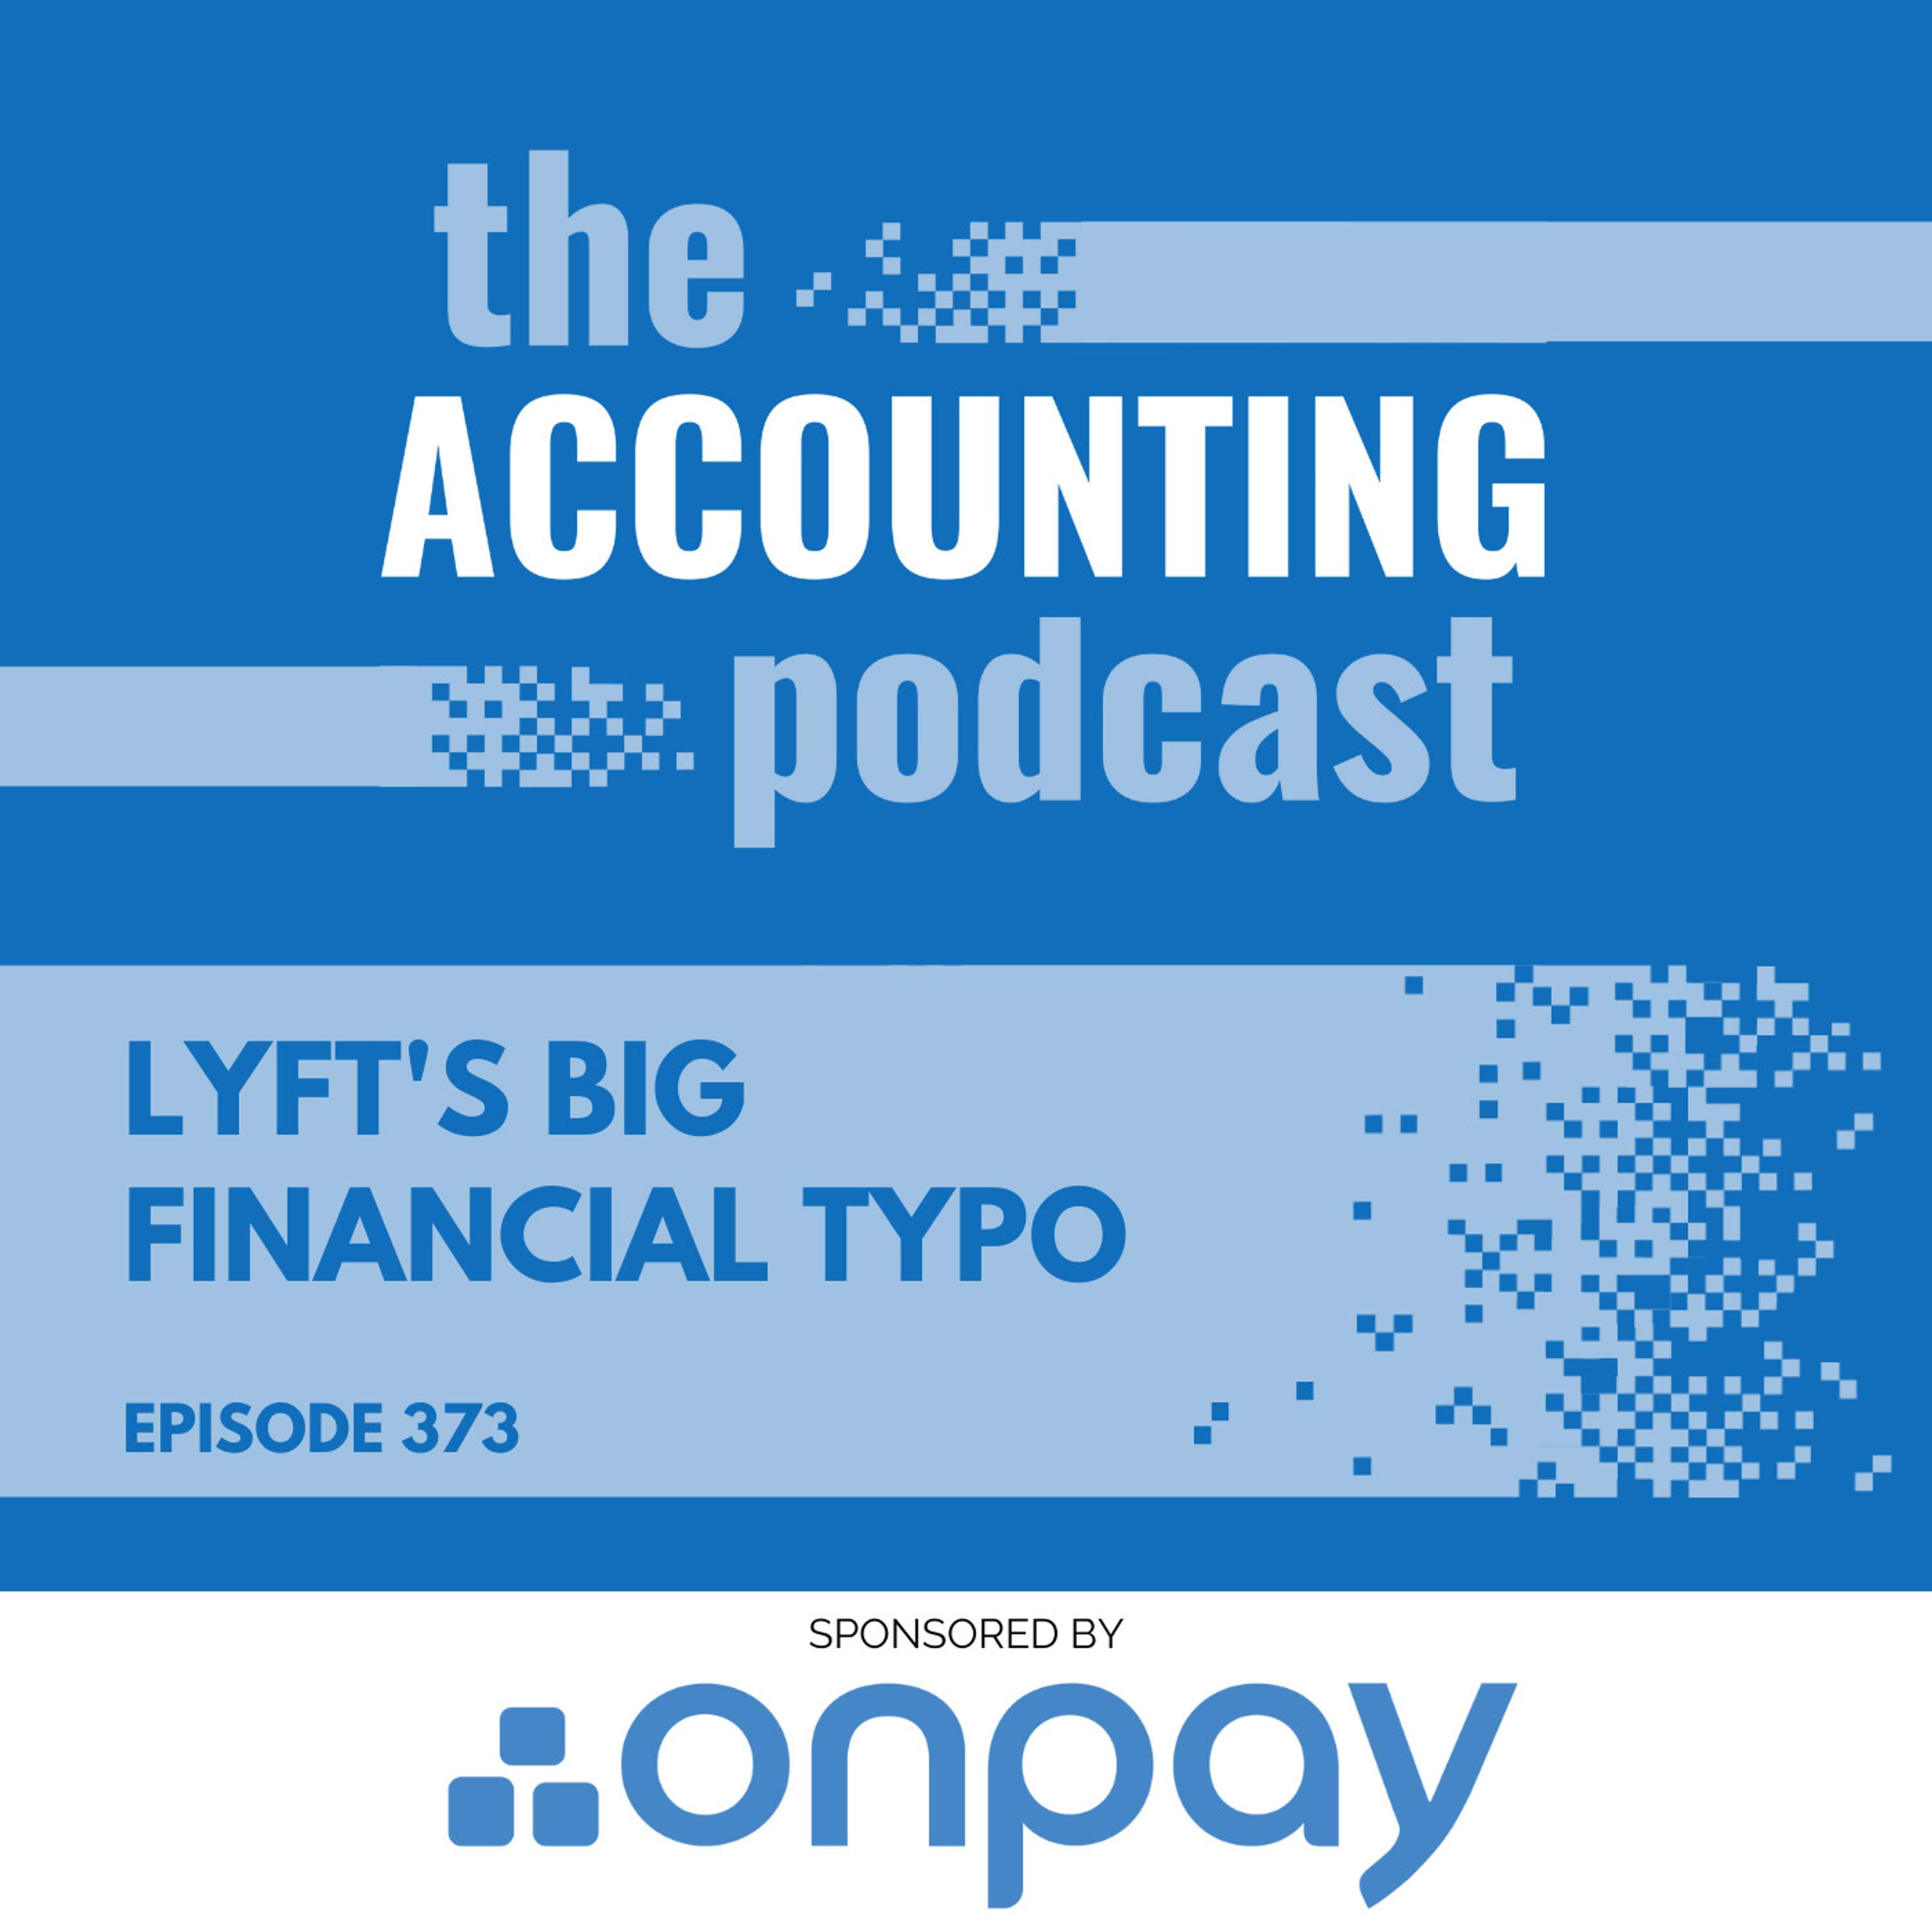 Lyft's Big Financial Typo